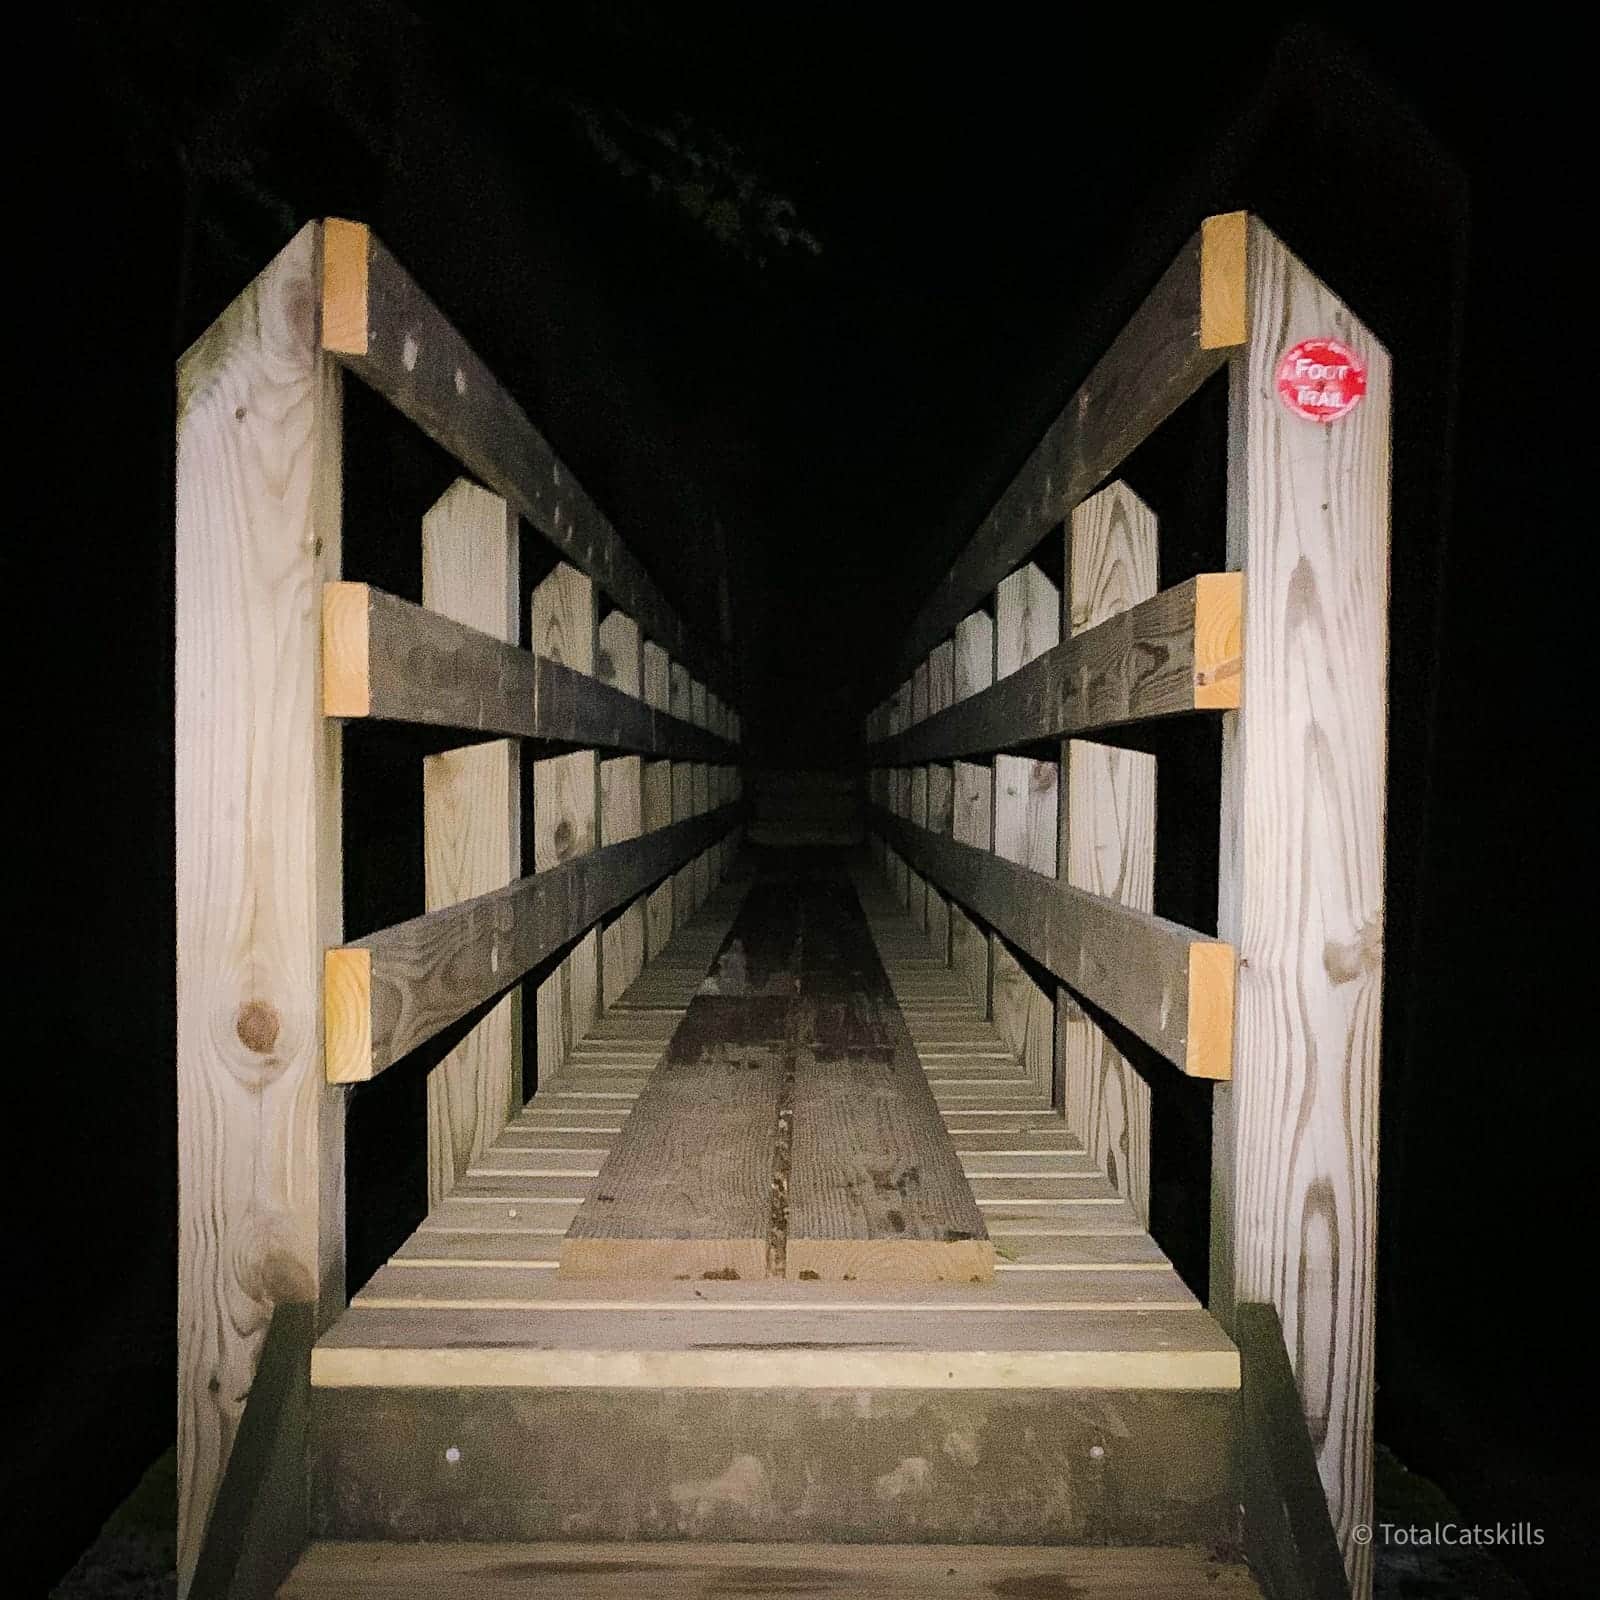 footbridge at night